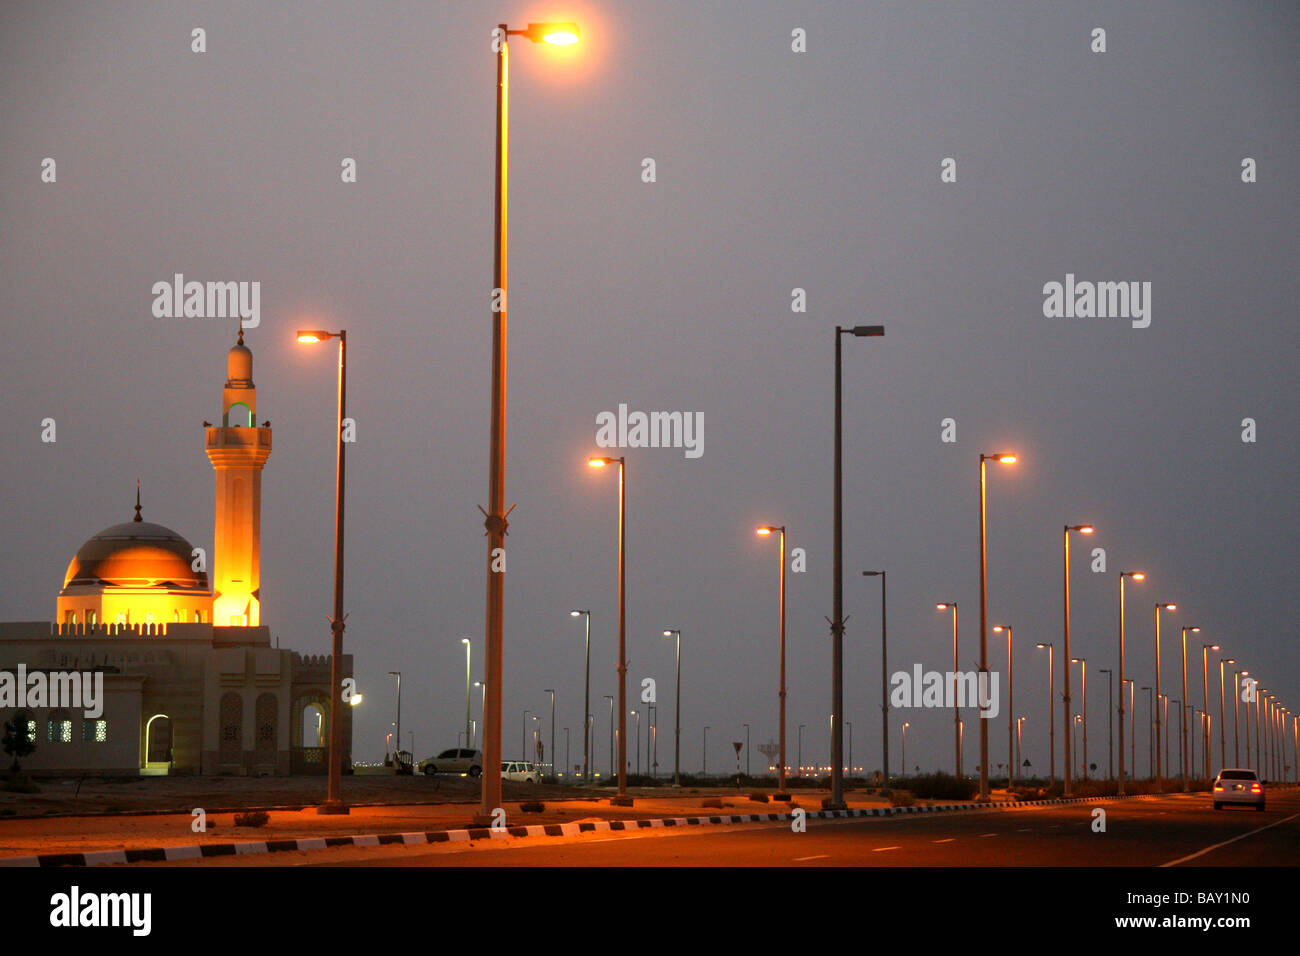 Illuminated streets of Abu Dhabi, United Arab Emirates, UAE Stock Photo